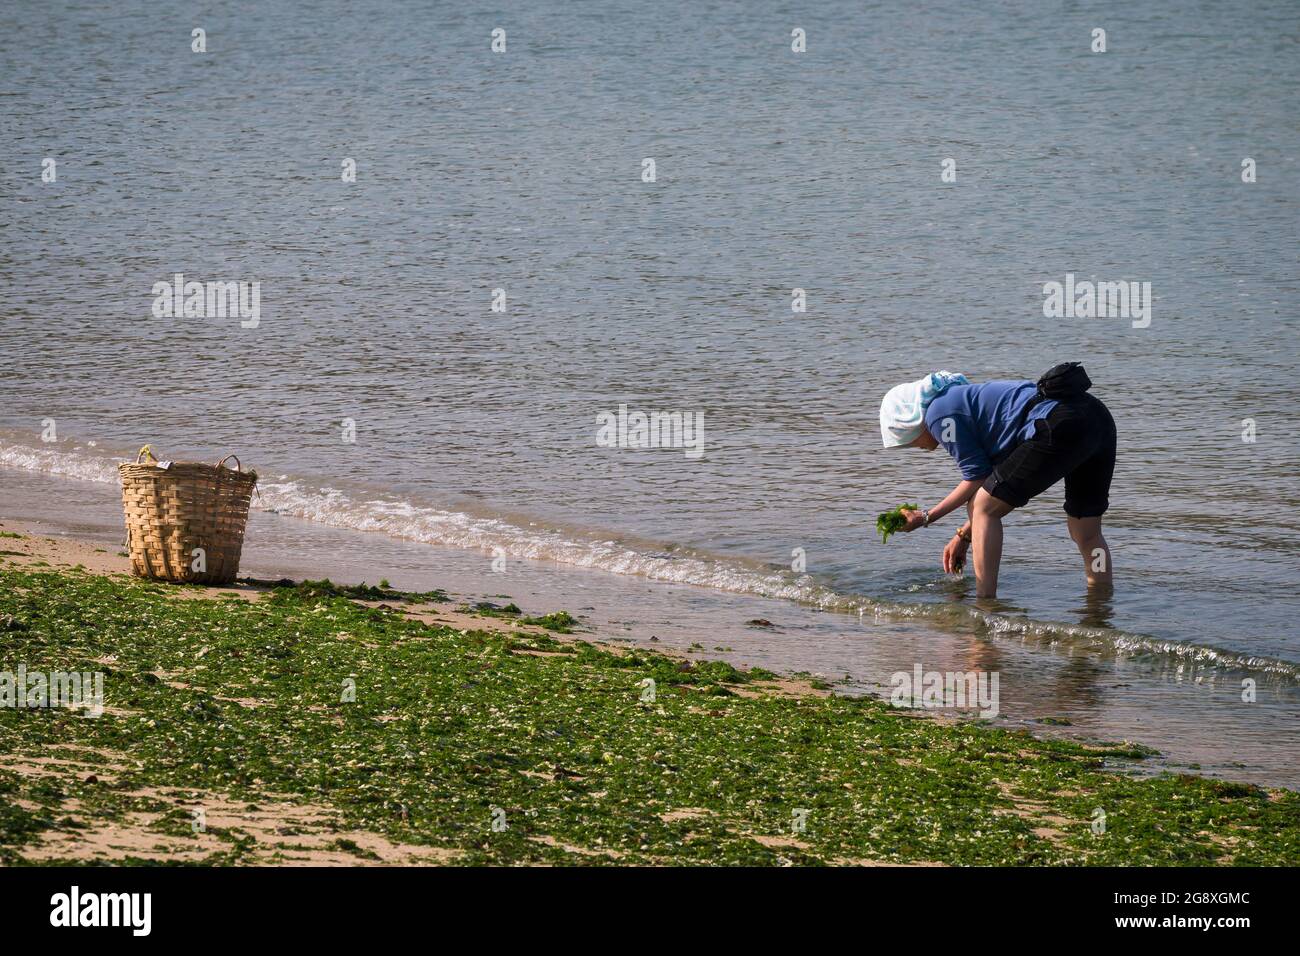 Eine einheimische Frau sammelt Algen, die am Strand aufgespült werden, um frisch zu essen und durch Trocknen zu konservieren, auf Peng Chau, einer abgelegenen Insel Hongkongs Stockfoto